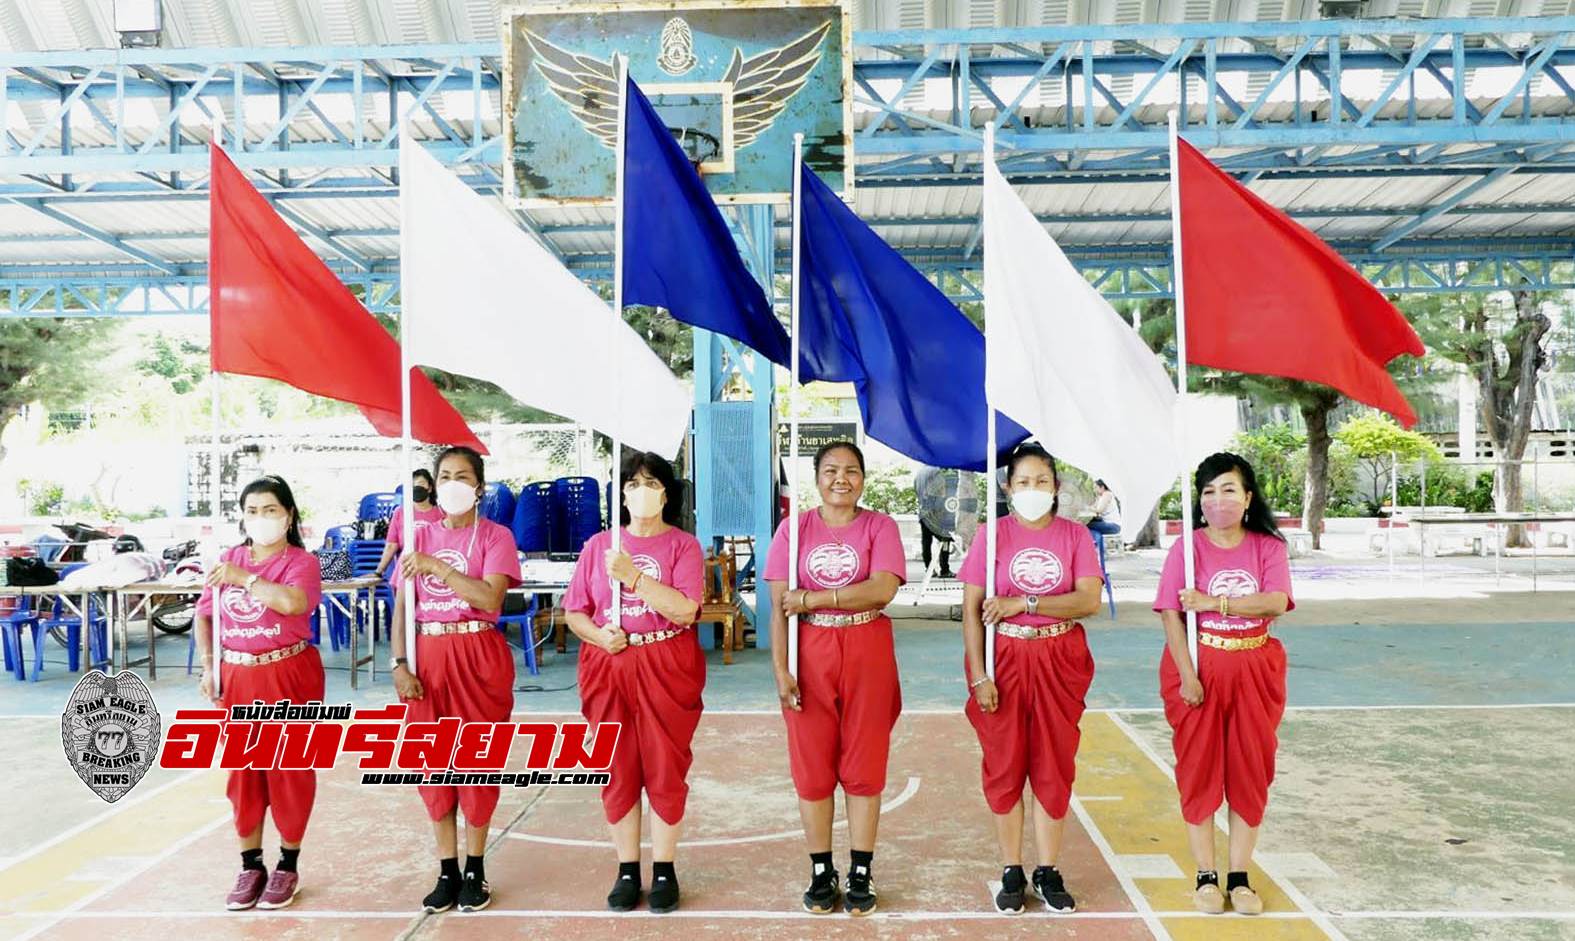 ประจวบคีรีขันธ์-เยวชน 600 คน ฝึกซ้อมจินตลีลาประกอบเพลงธงชาติ เตรียมแสดงในวันพ่อแห่งชาติ ที่อุทยานราชภักดิ์